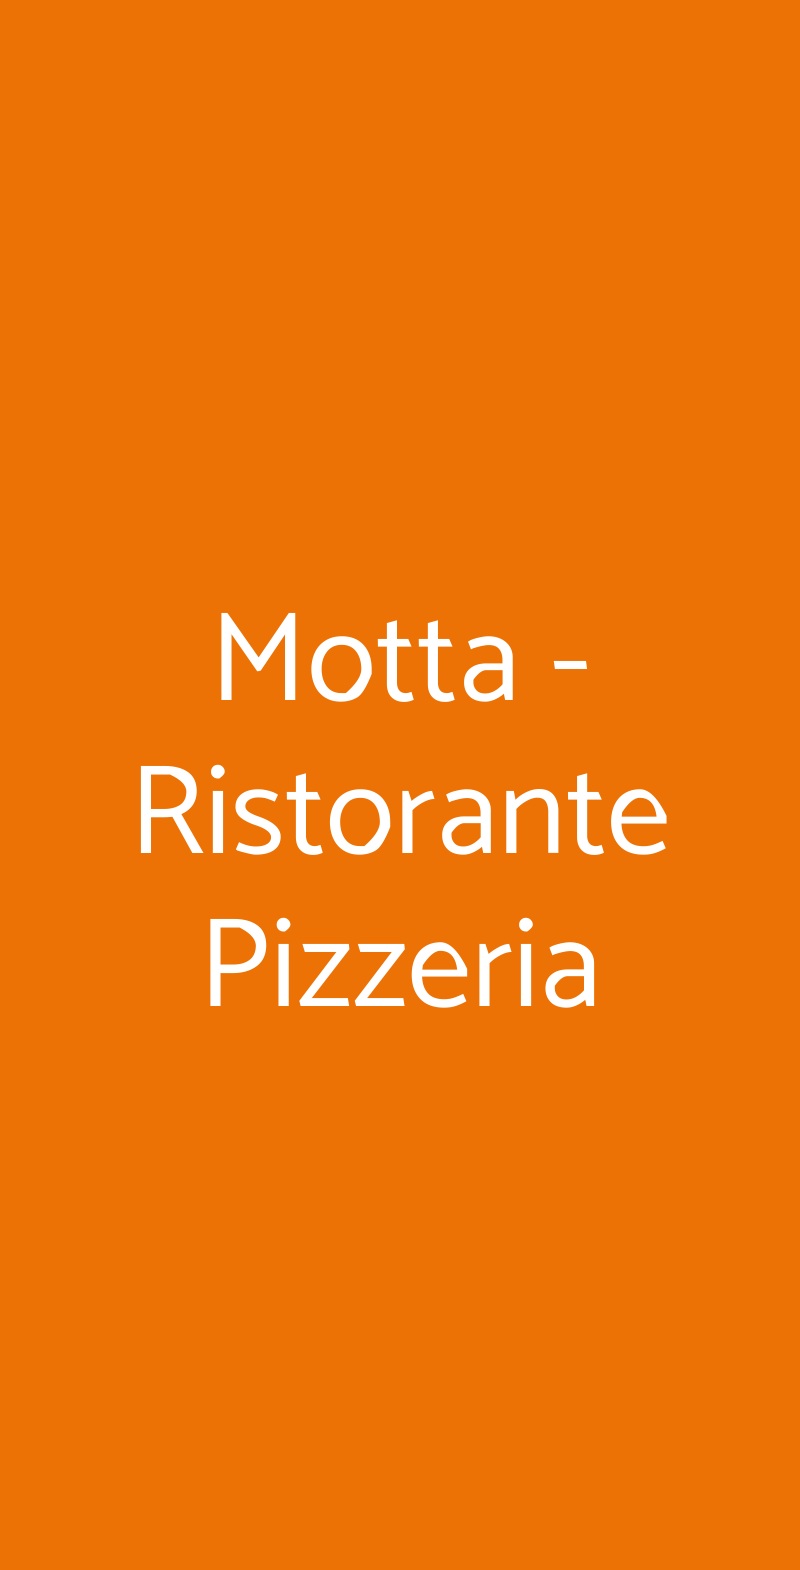 Motta - Ristorante Pizzeria Pistoia menù 1 pagina